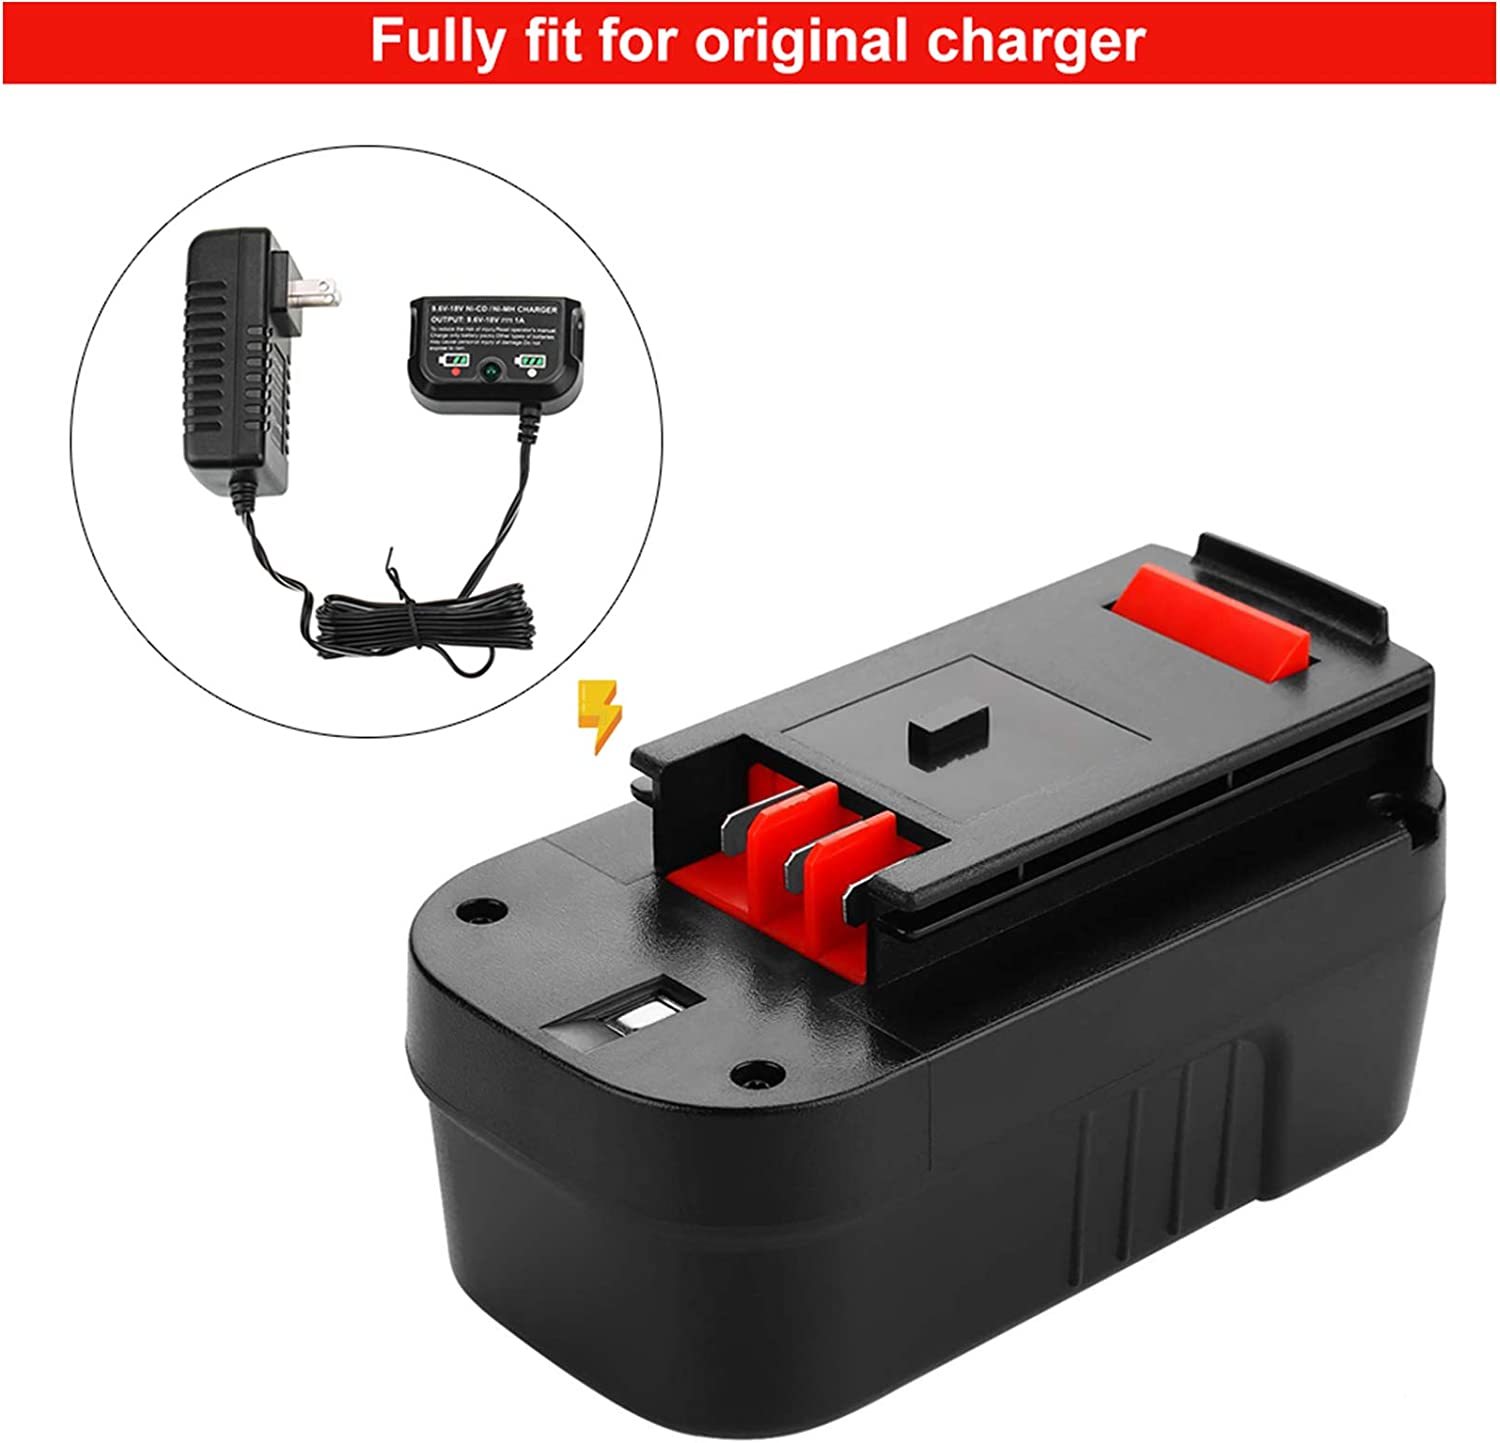 Black Decker 18 Volt Battery Replacement